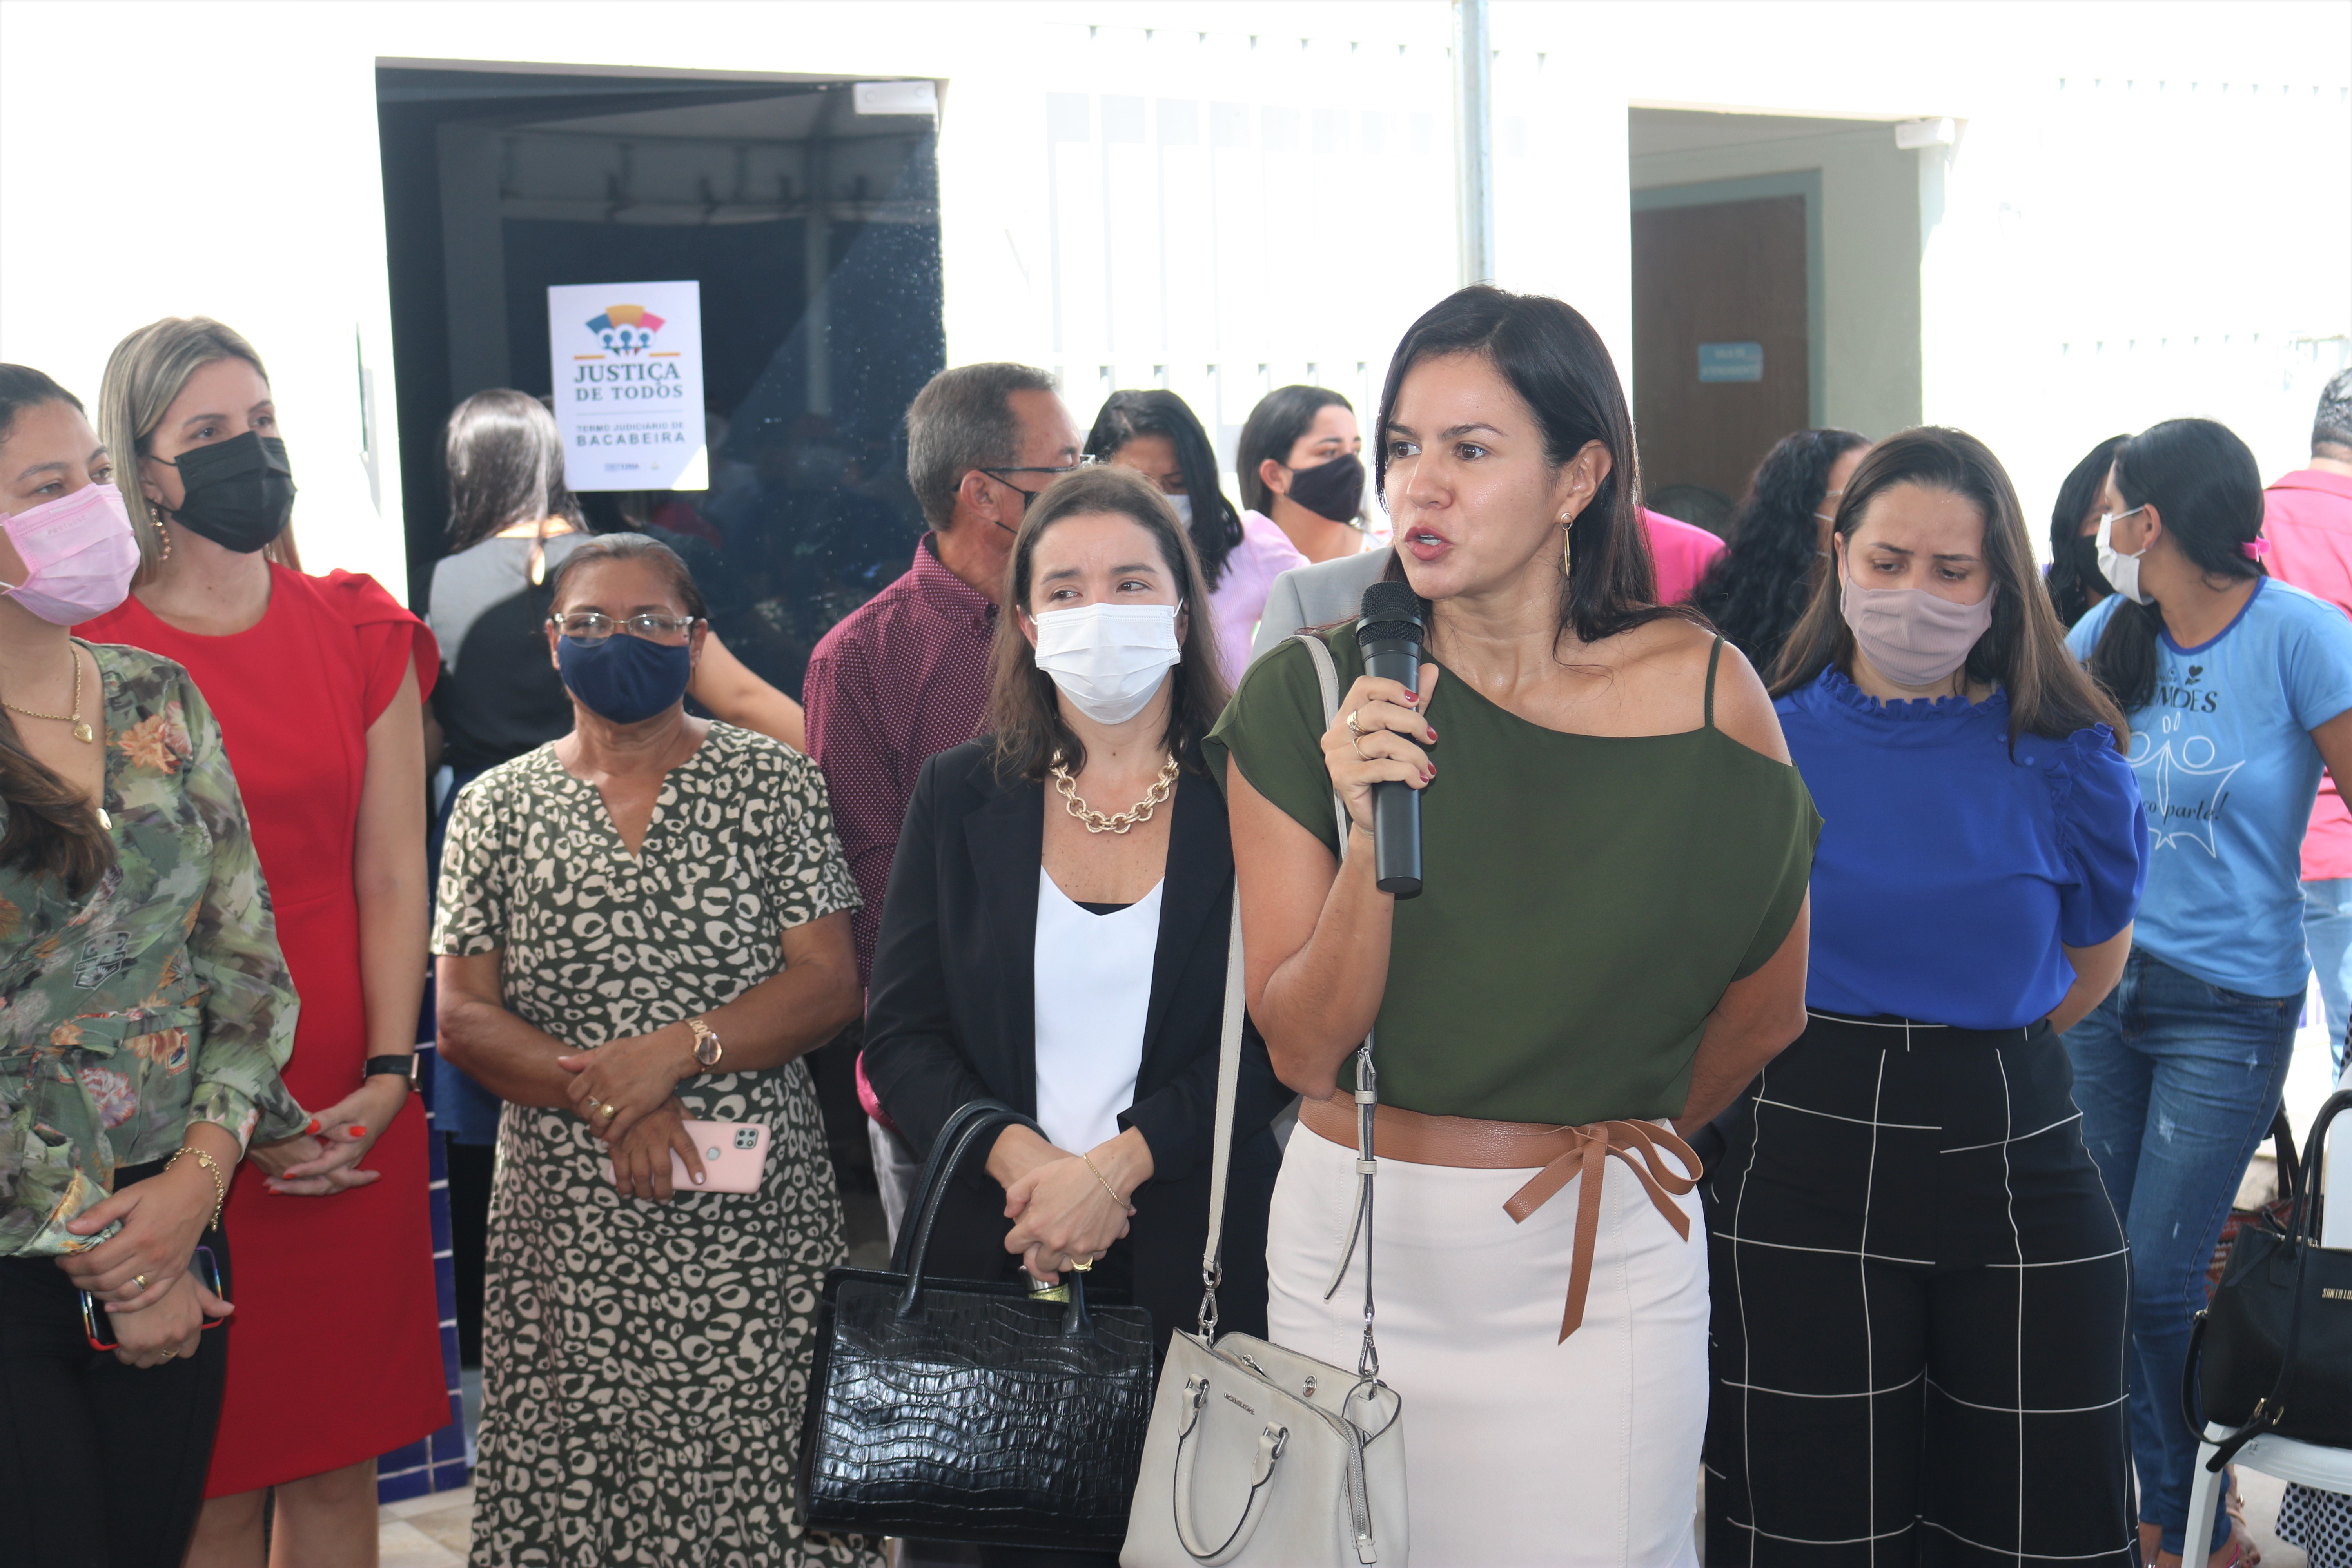 Solenidade de lançamento do projeto justiça de todos em bacabeira. Juiza Tereza Nina representou a COrregedoria no evento.